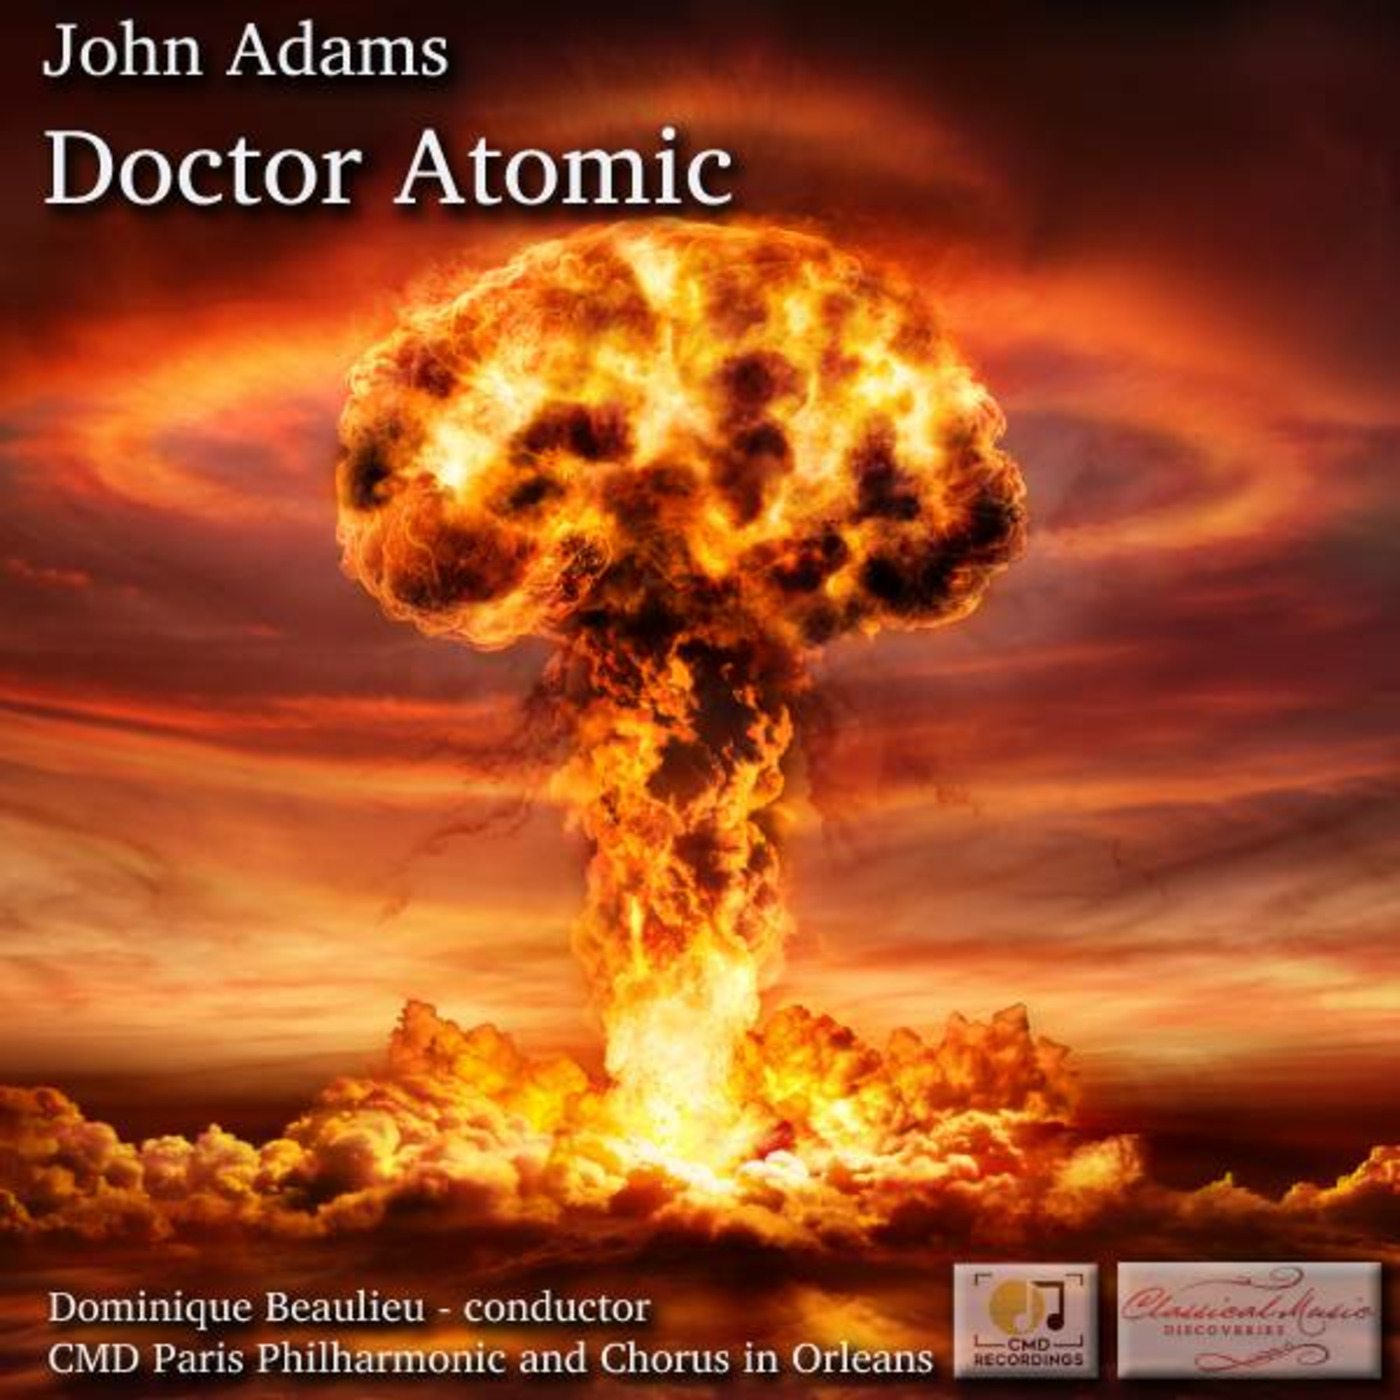 Episode 22: 18022 Adams: Doctor Atomic